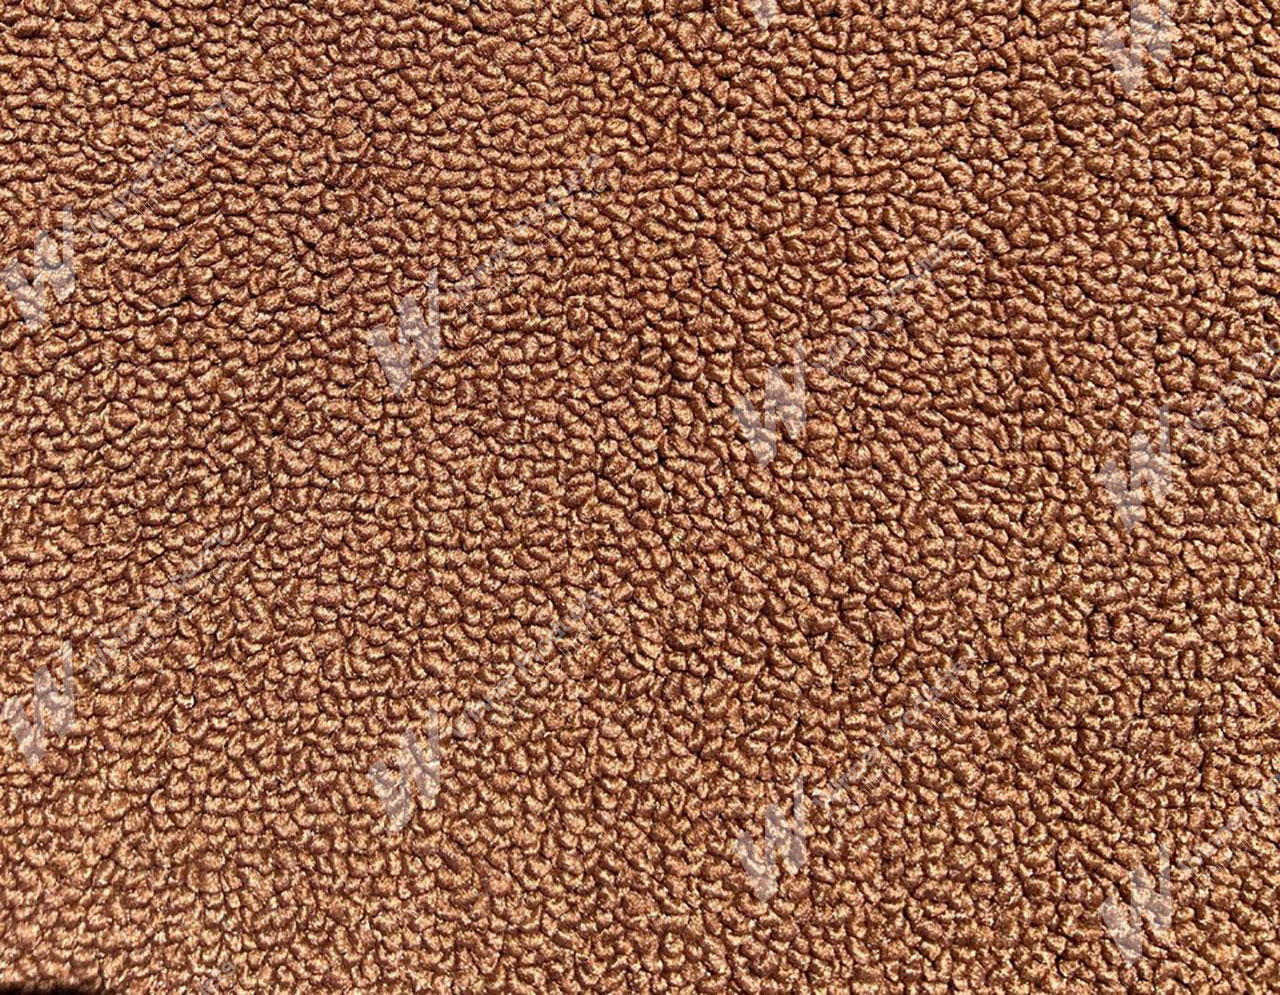 Holden Kingswood HJ Kingswood Wagon 67V Tan Carpet (Image 1 of 1)